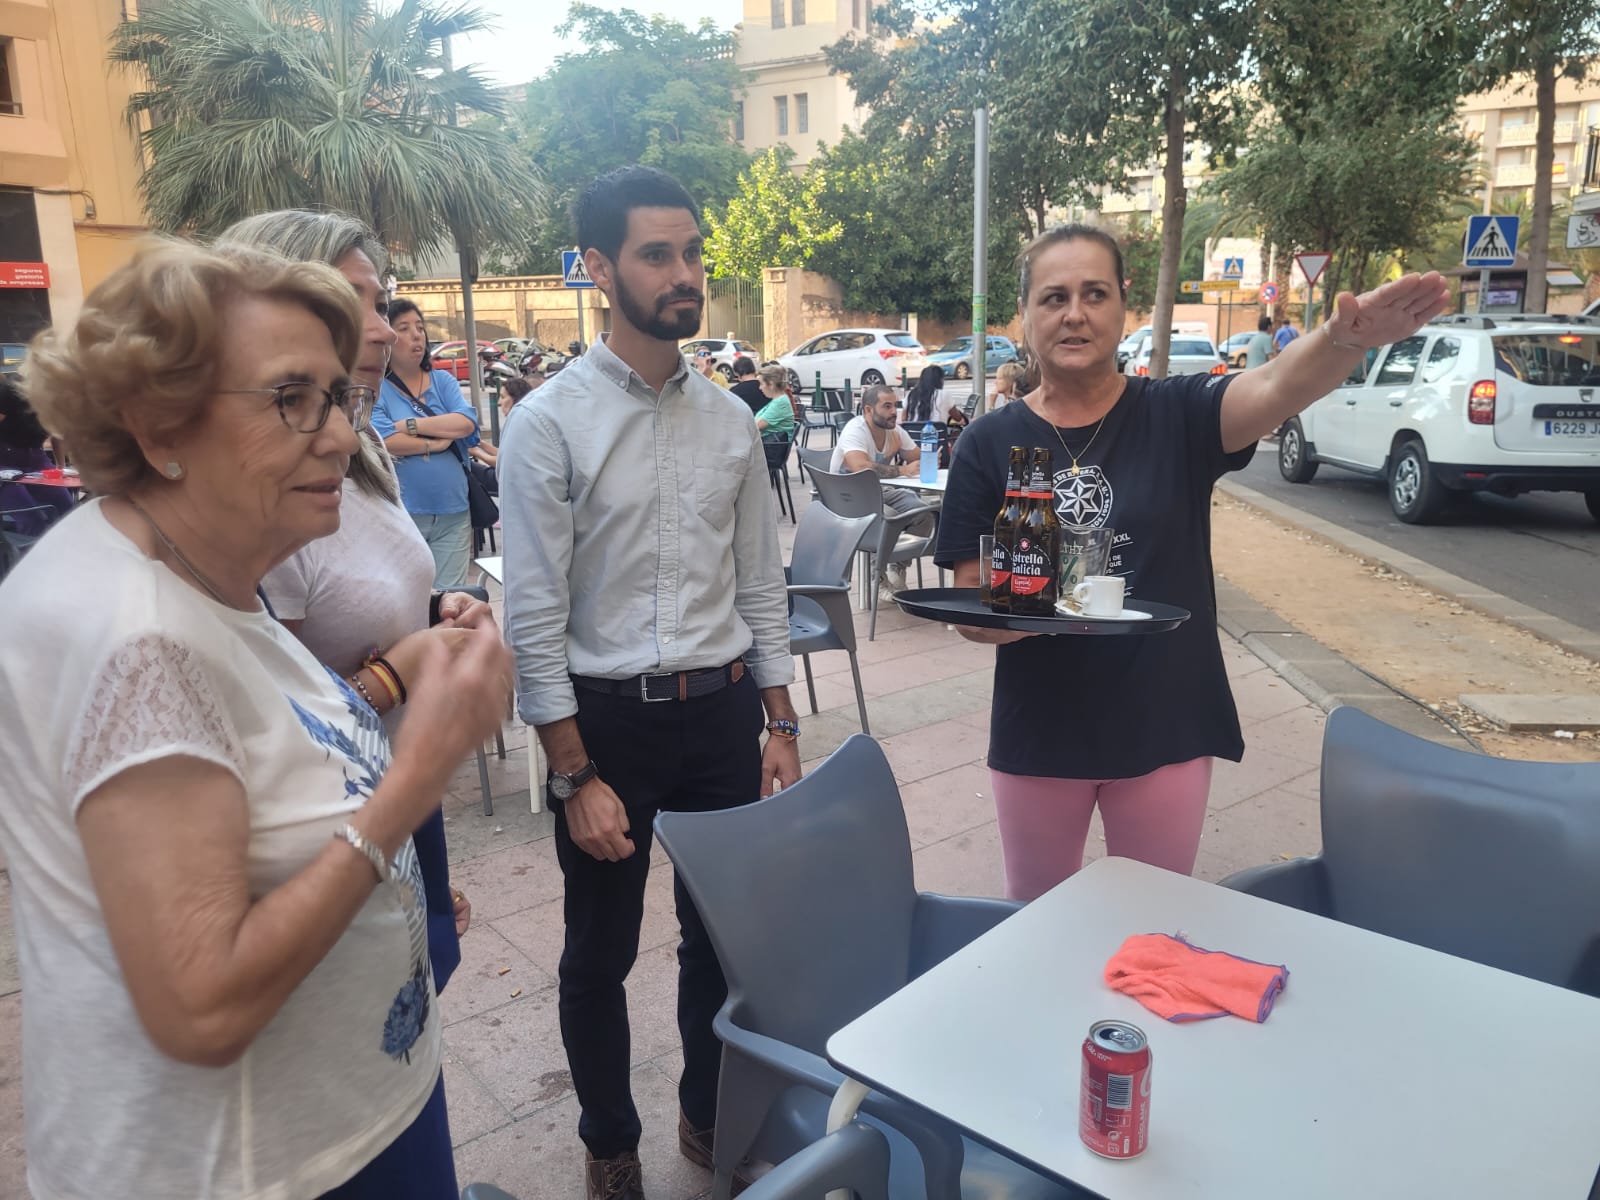 El concejal de Medio Ambiente, Cristian Ramírez, se reúne con vecinos de la plaza Juan XXIII para consensuar soluciones al problema del arbolado